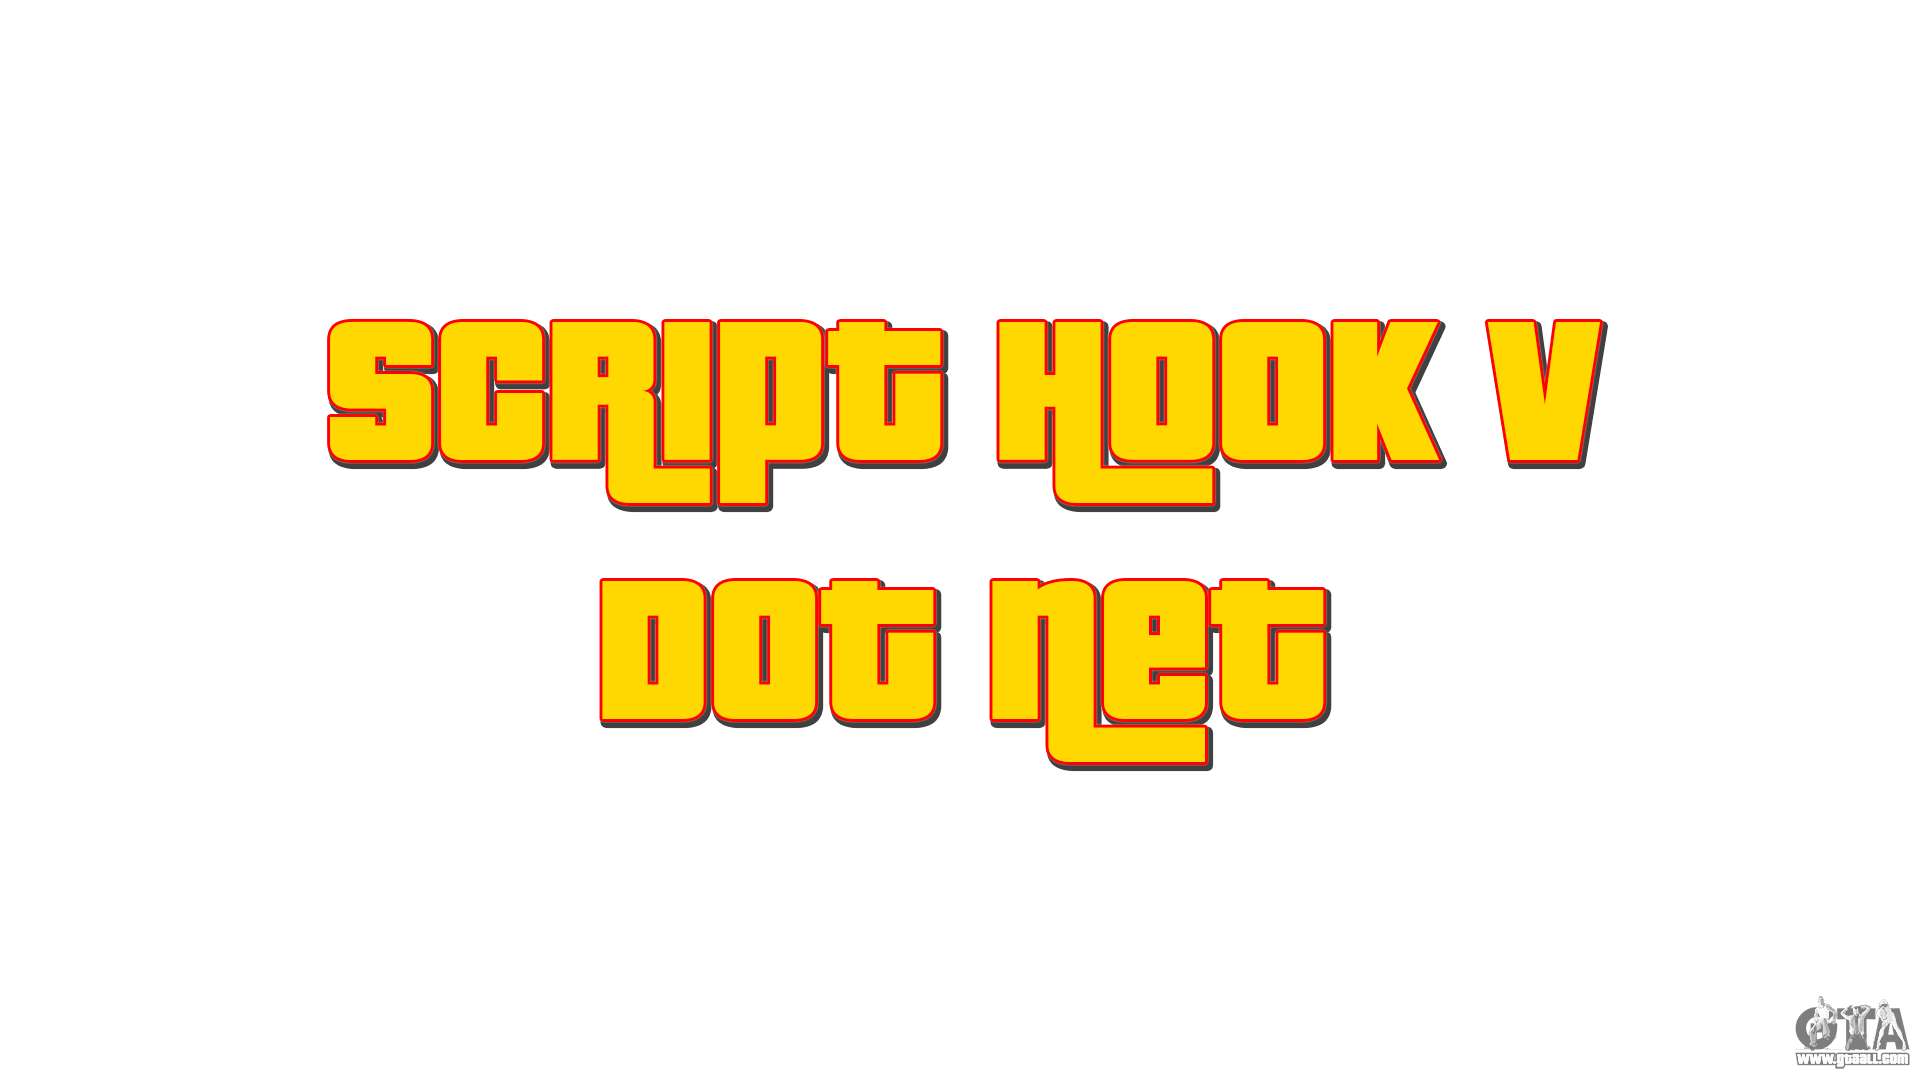 download script hook v